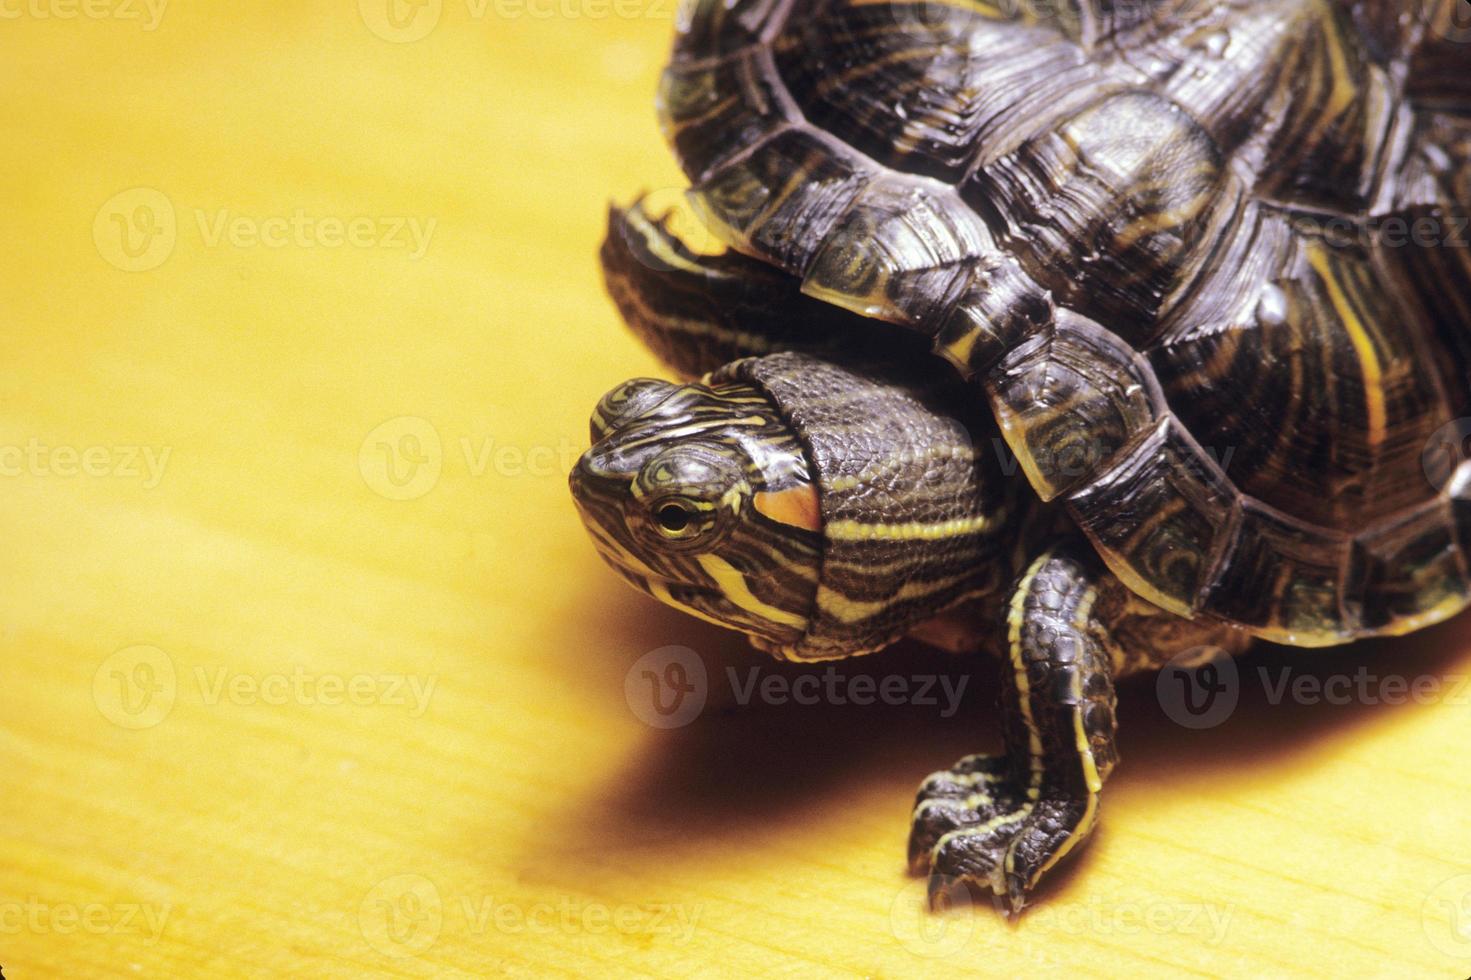 Morocoy turtle photo